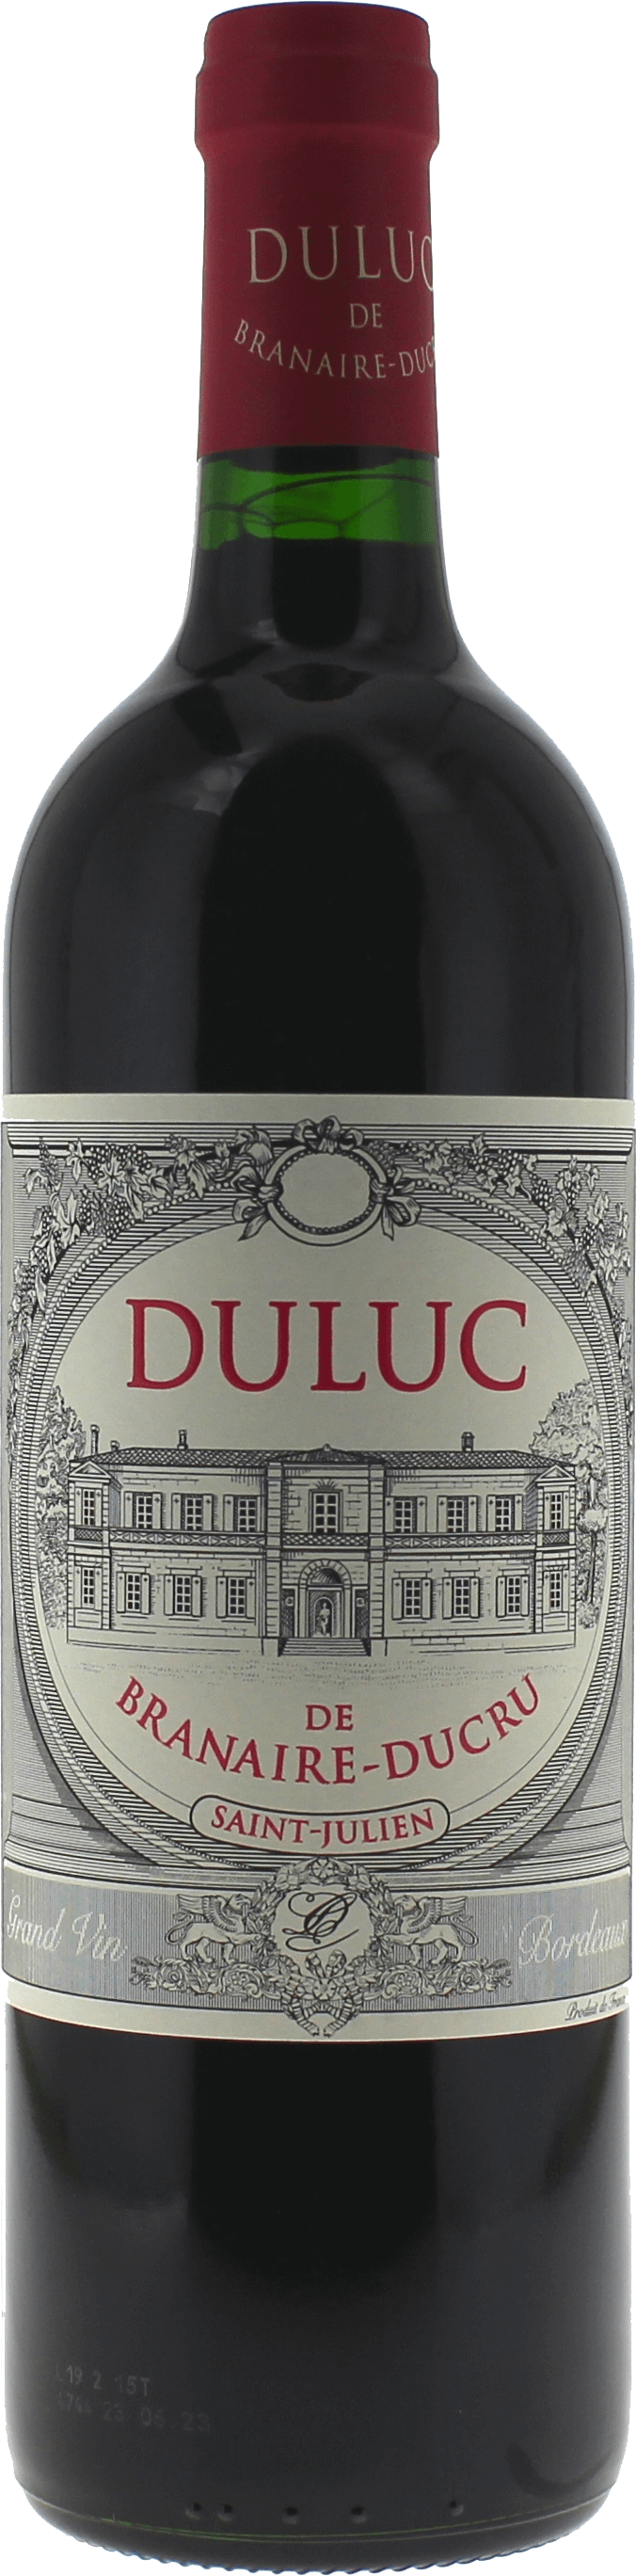 Duluc de branaire ducru 2019 2nd vin de Branaire Ducru Saint-Julien, Bordeaux rouge